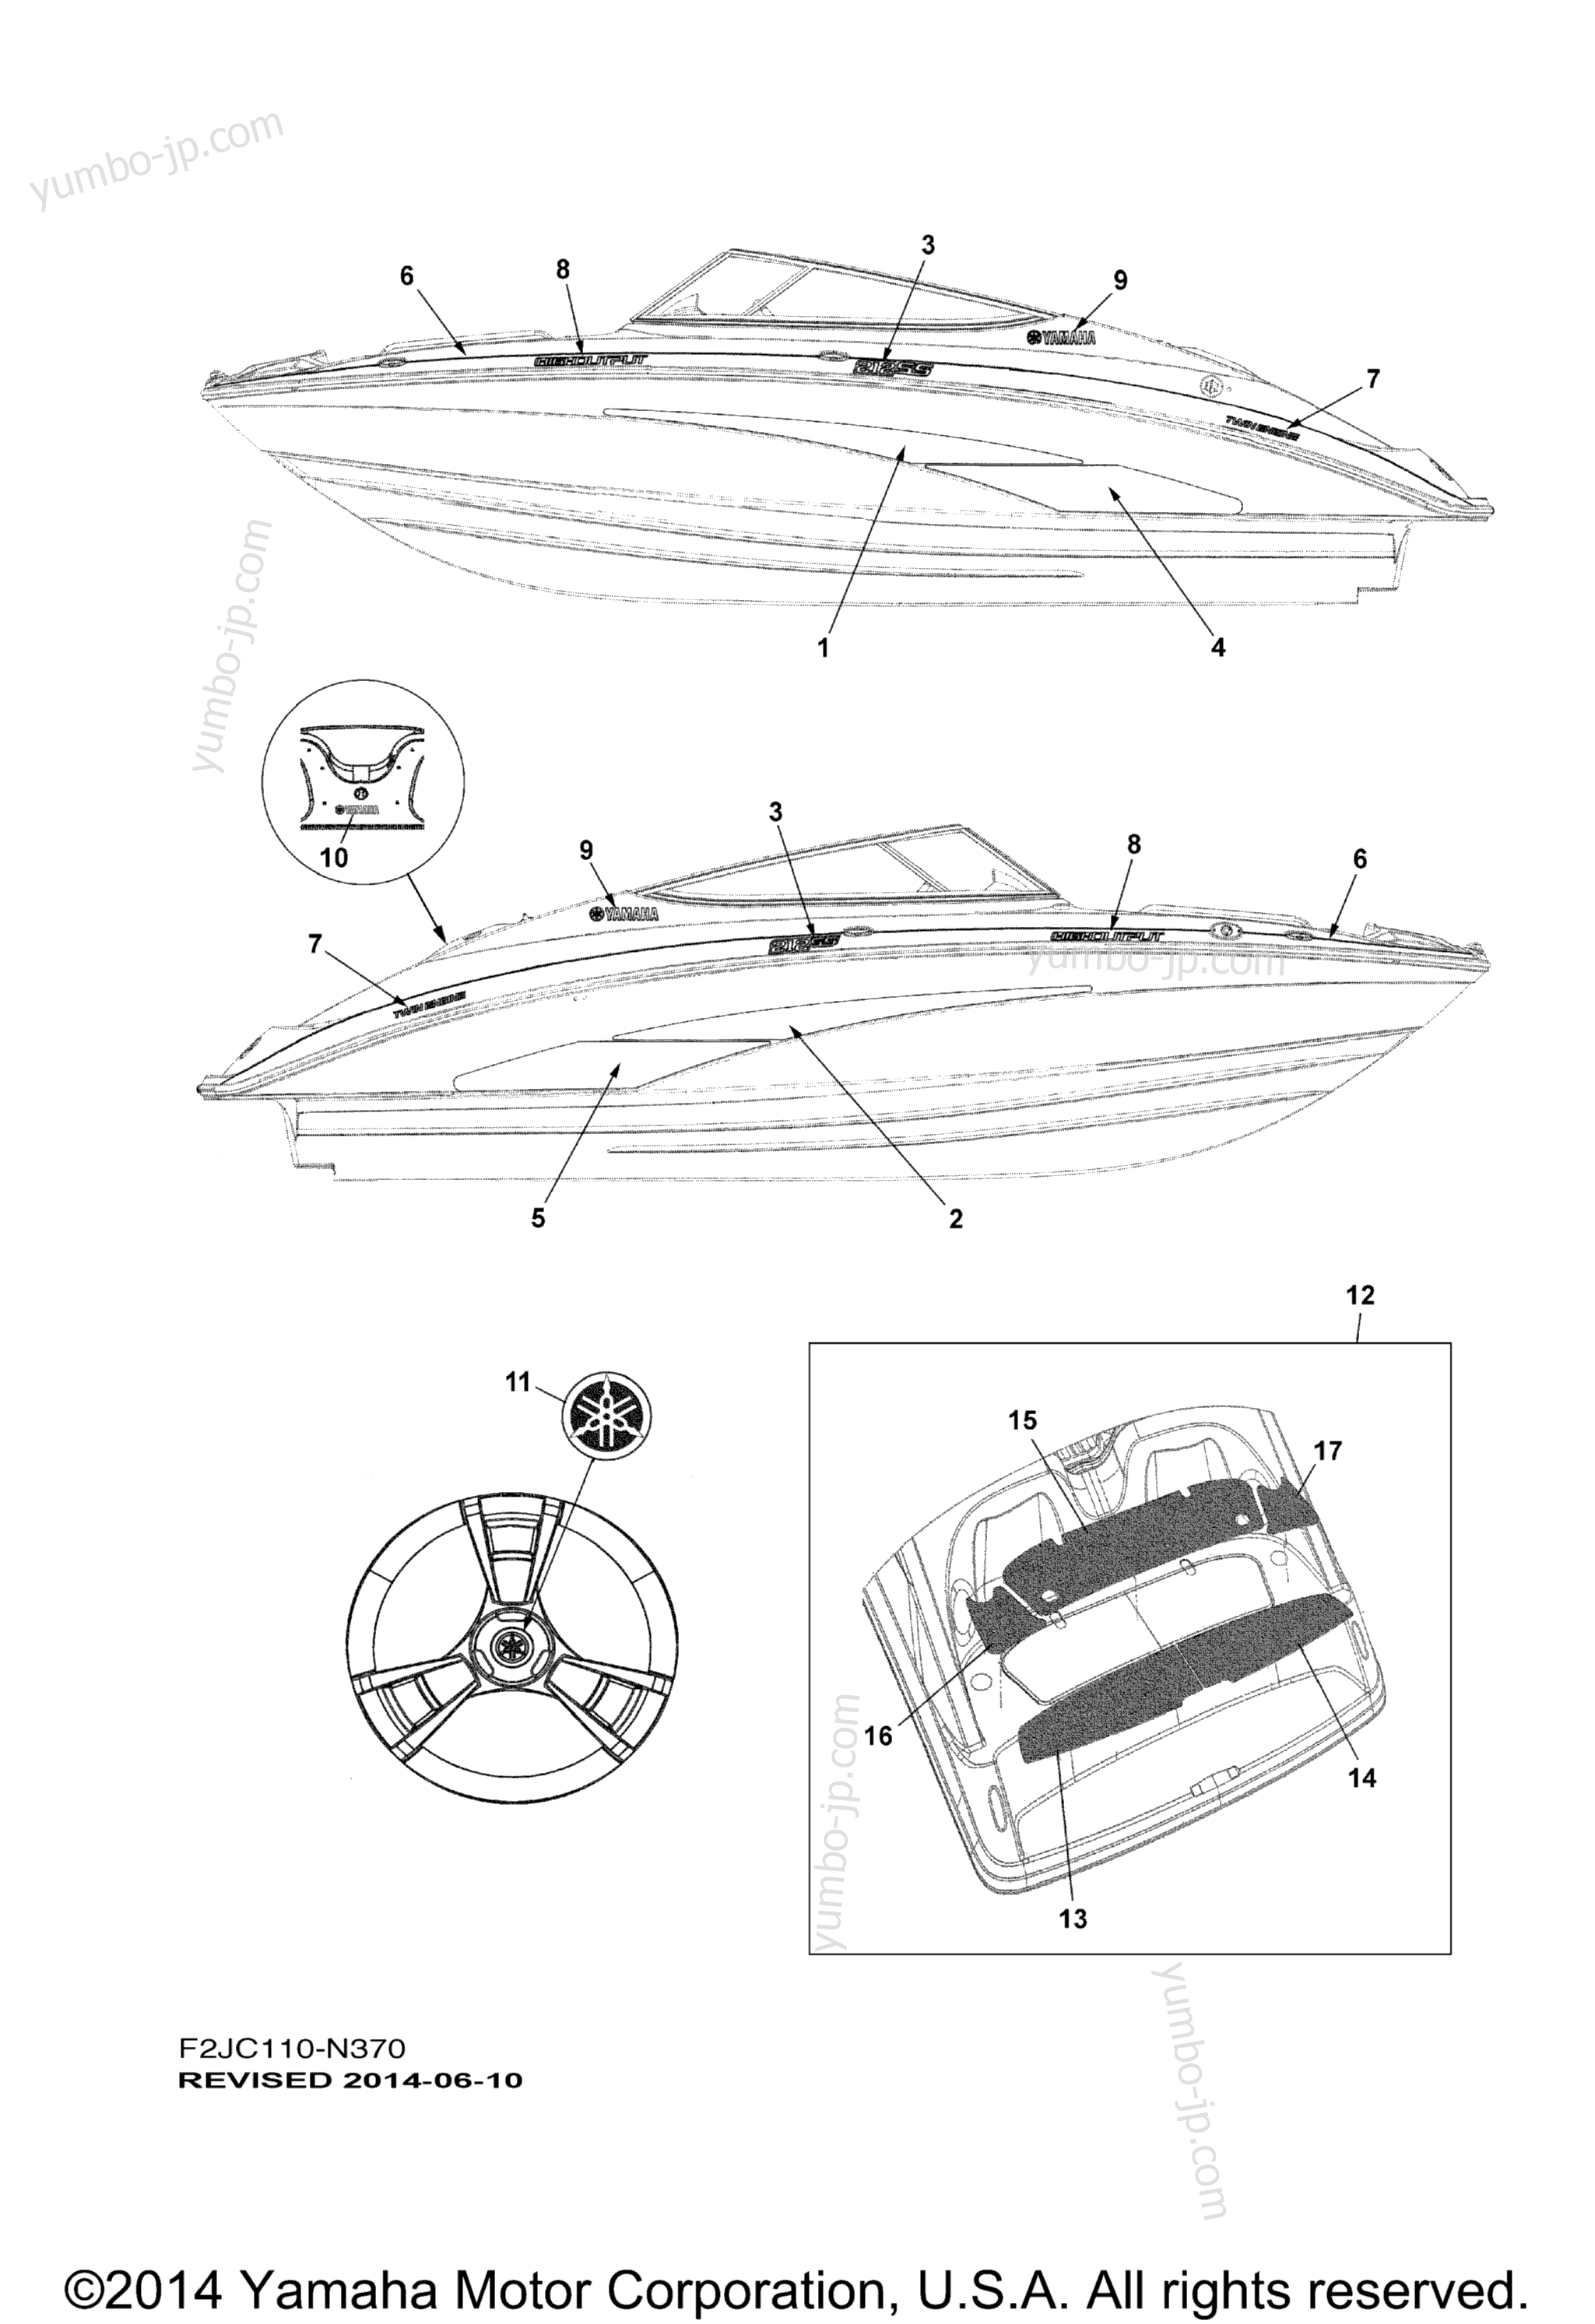 Graphics & Mats for boats YAMAHA 212SS (XAT1800CN) 2014 year